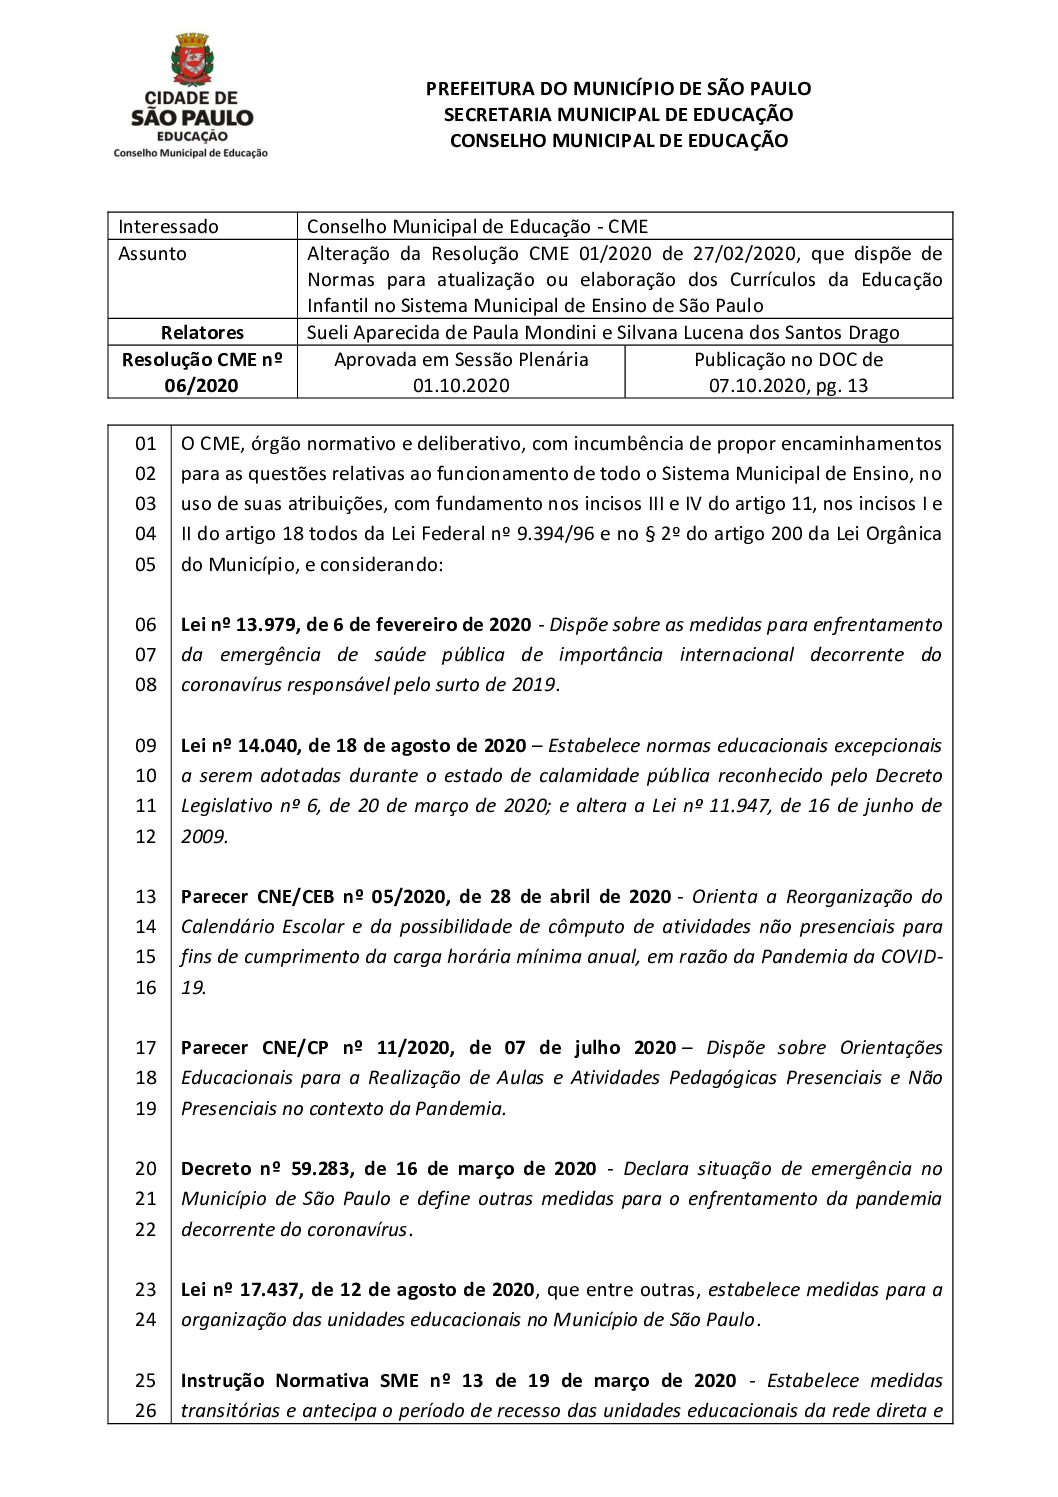 Resolução CME nº 06/2020 - Alteração da Resolução CME 01/2020 de 27/02/2020, que dispõe de Normas para atualização ou elaboração dos Currículos da Educação Infantil no Sistema Municipal de Ensino de São Paulo 